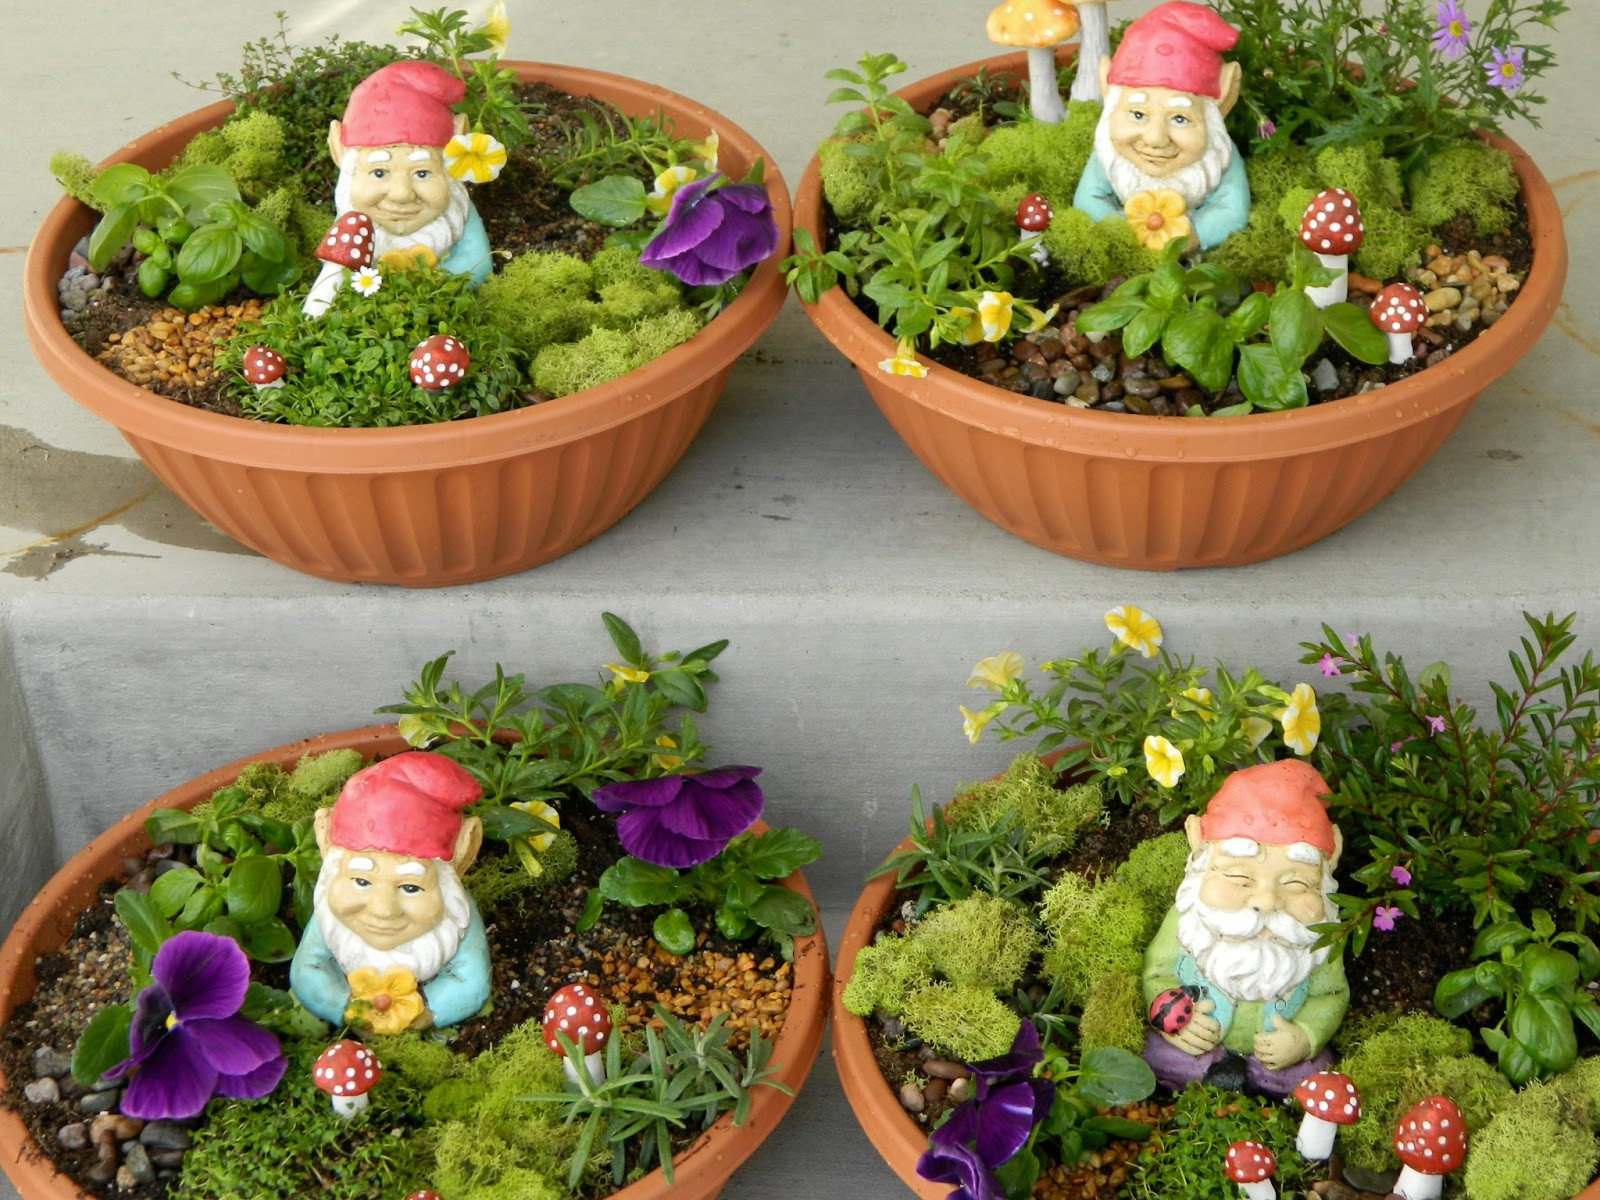 Best ideas about Gnome Garden Ideas
. Save or Pin the vintage umbrella Teacher Appreciation idea gnome garden Now.